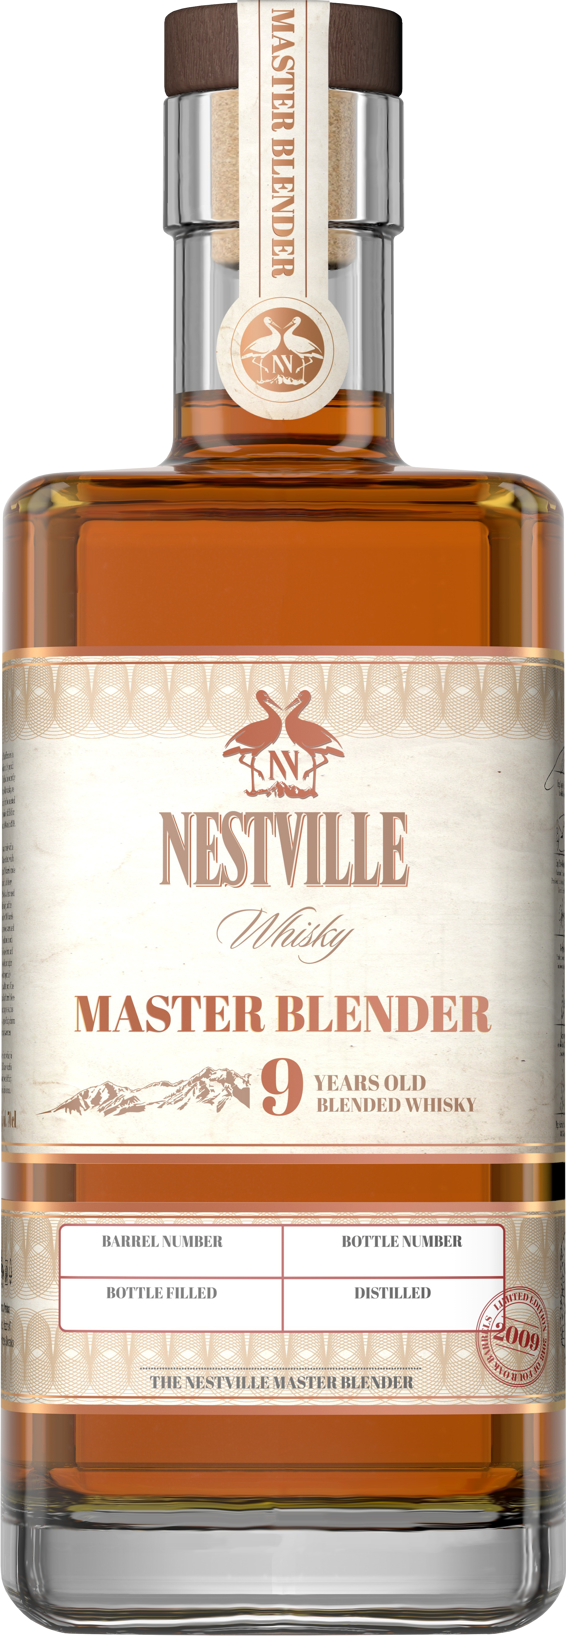 Nestville Master Blender 9